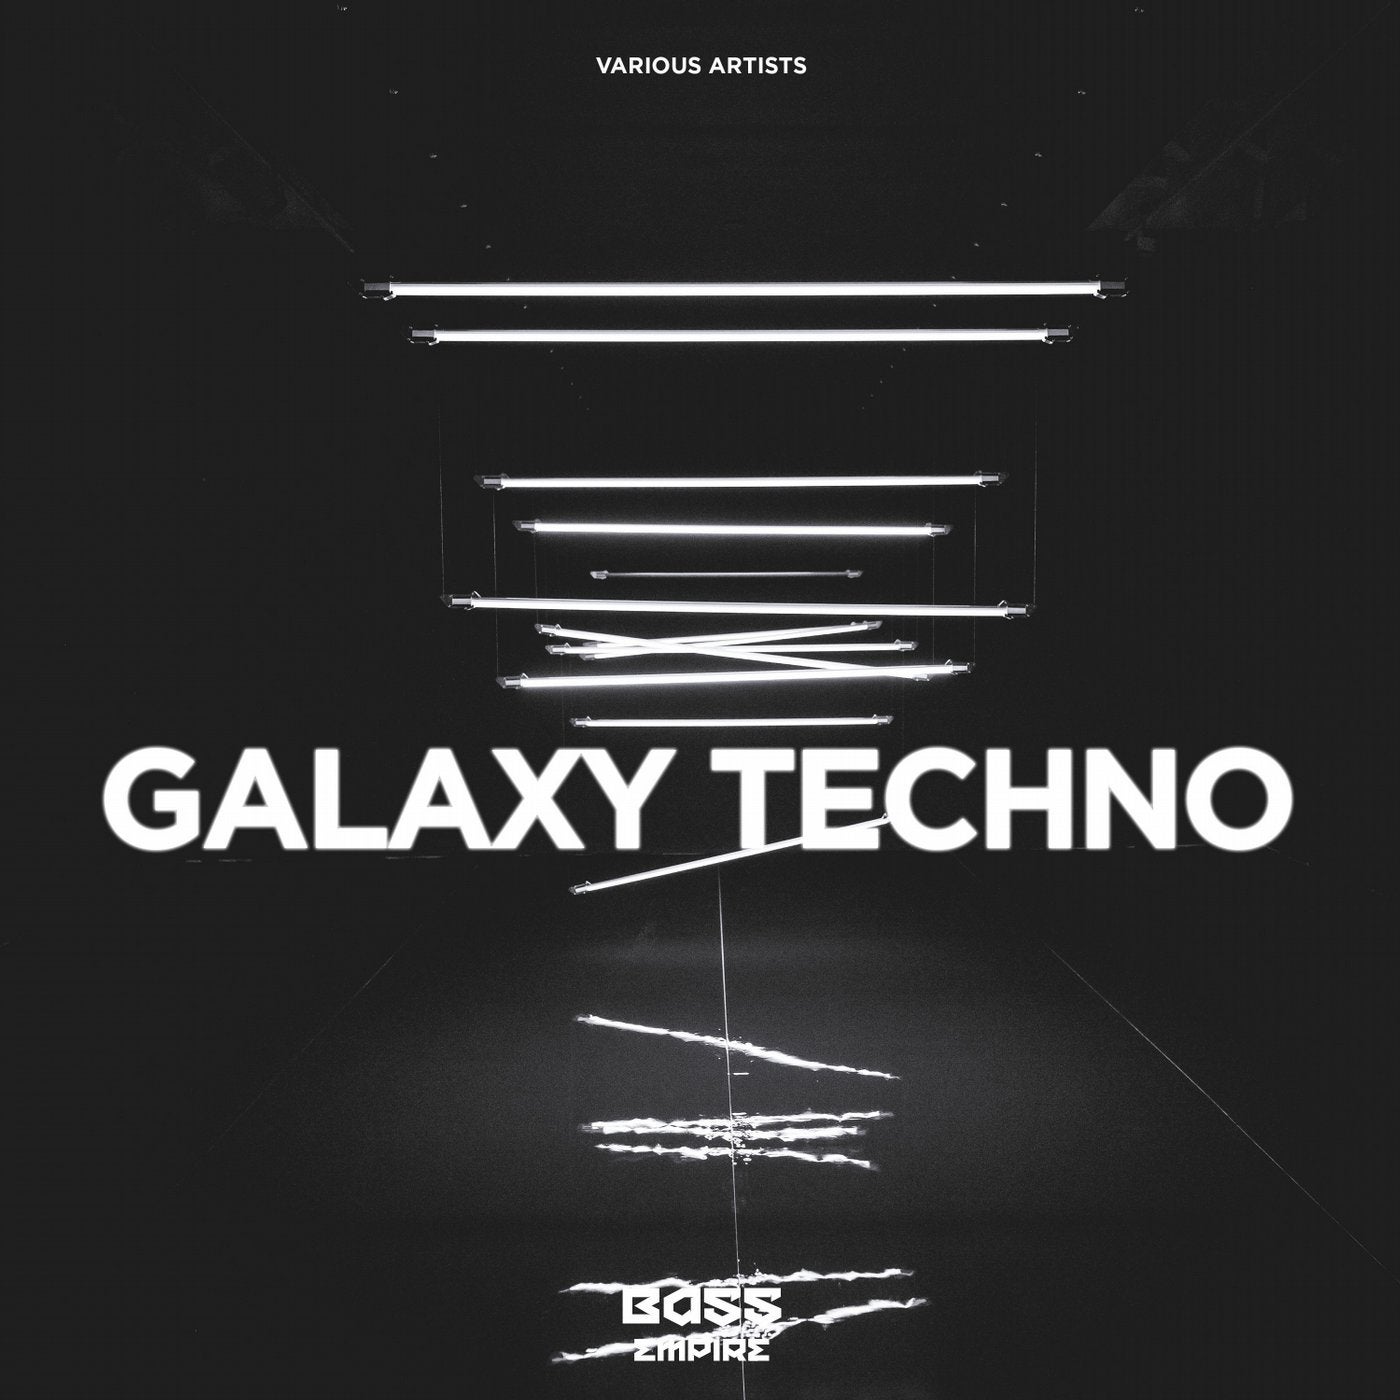 Galaxy Techno